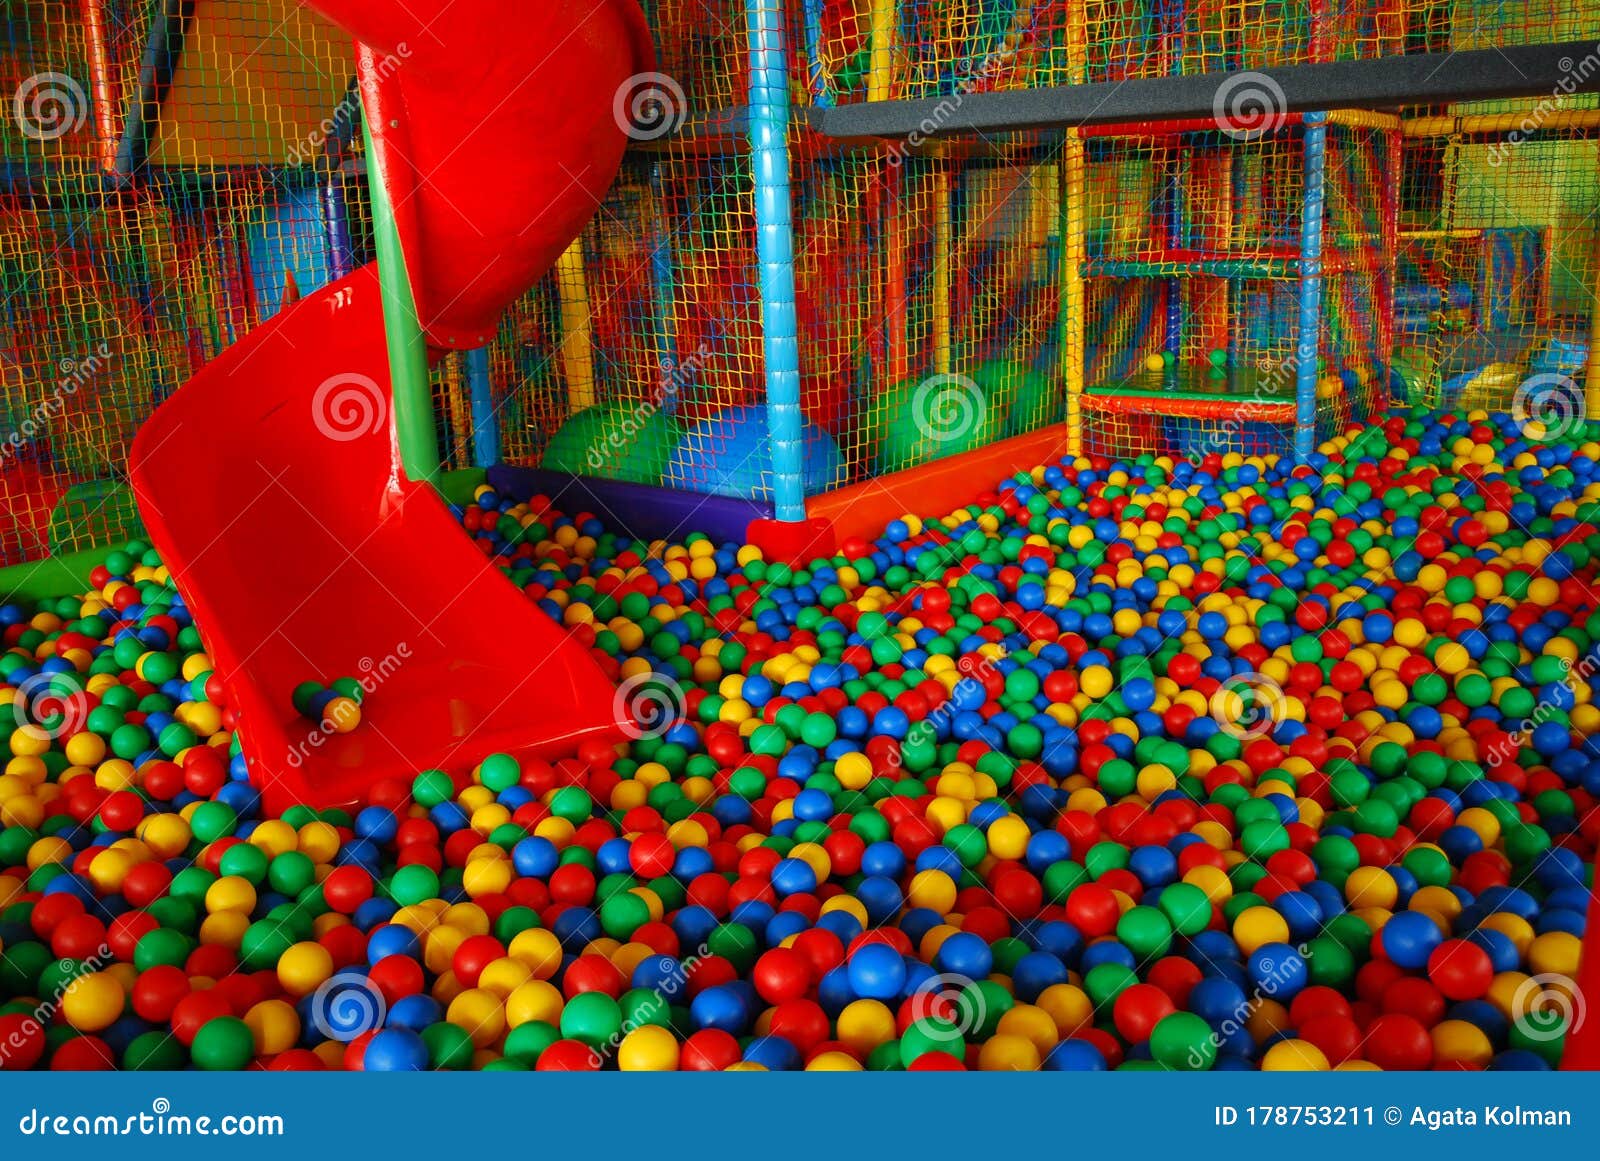 Fundo de muitas bolas coloridas de plástico na piscina de bolas em uma sala  de jogos para crianças